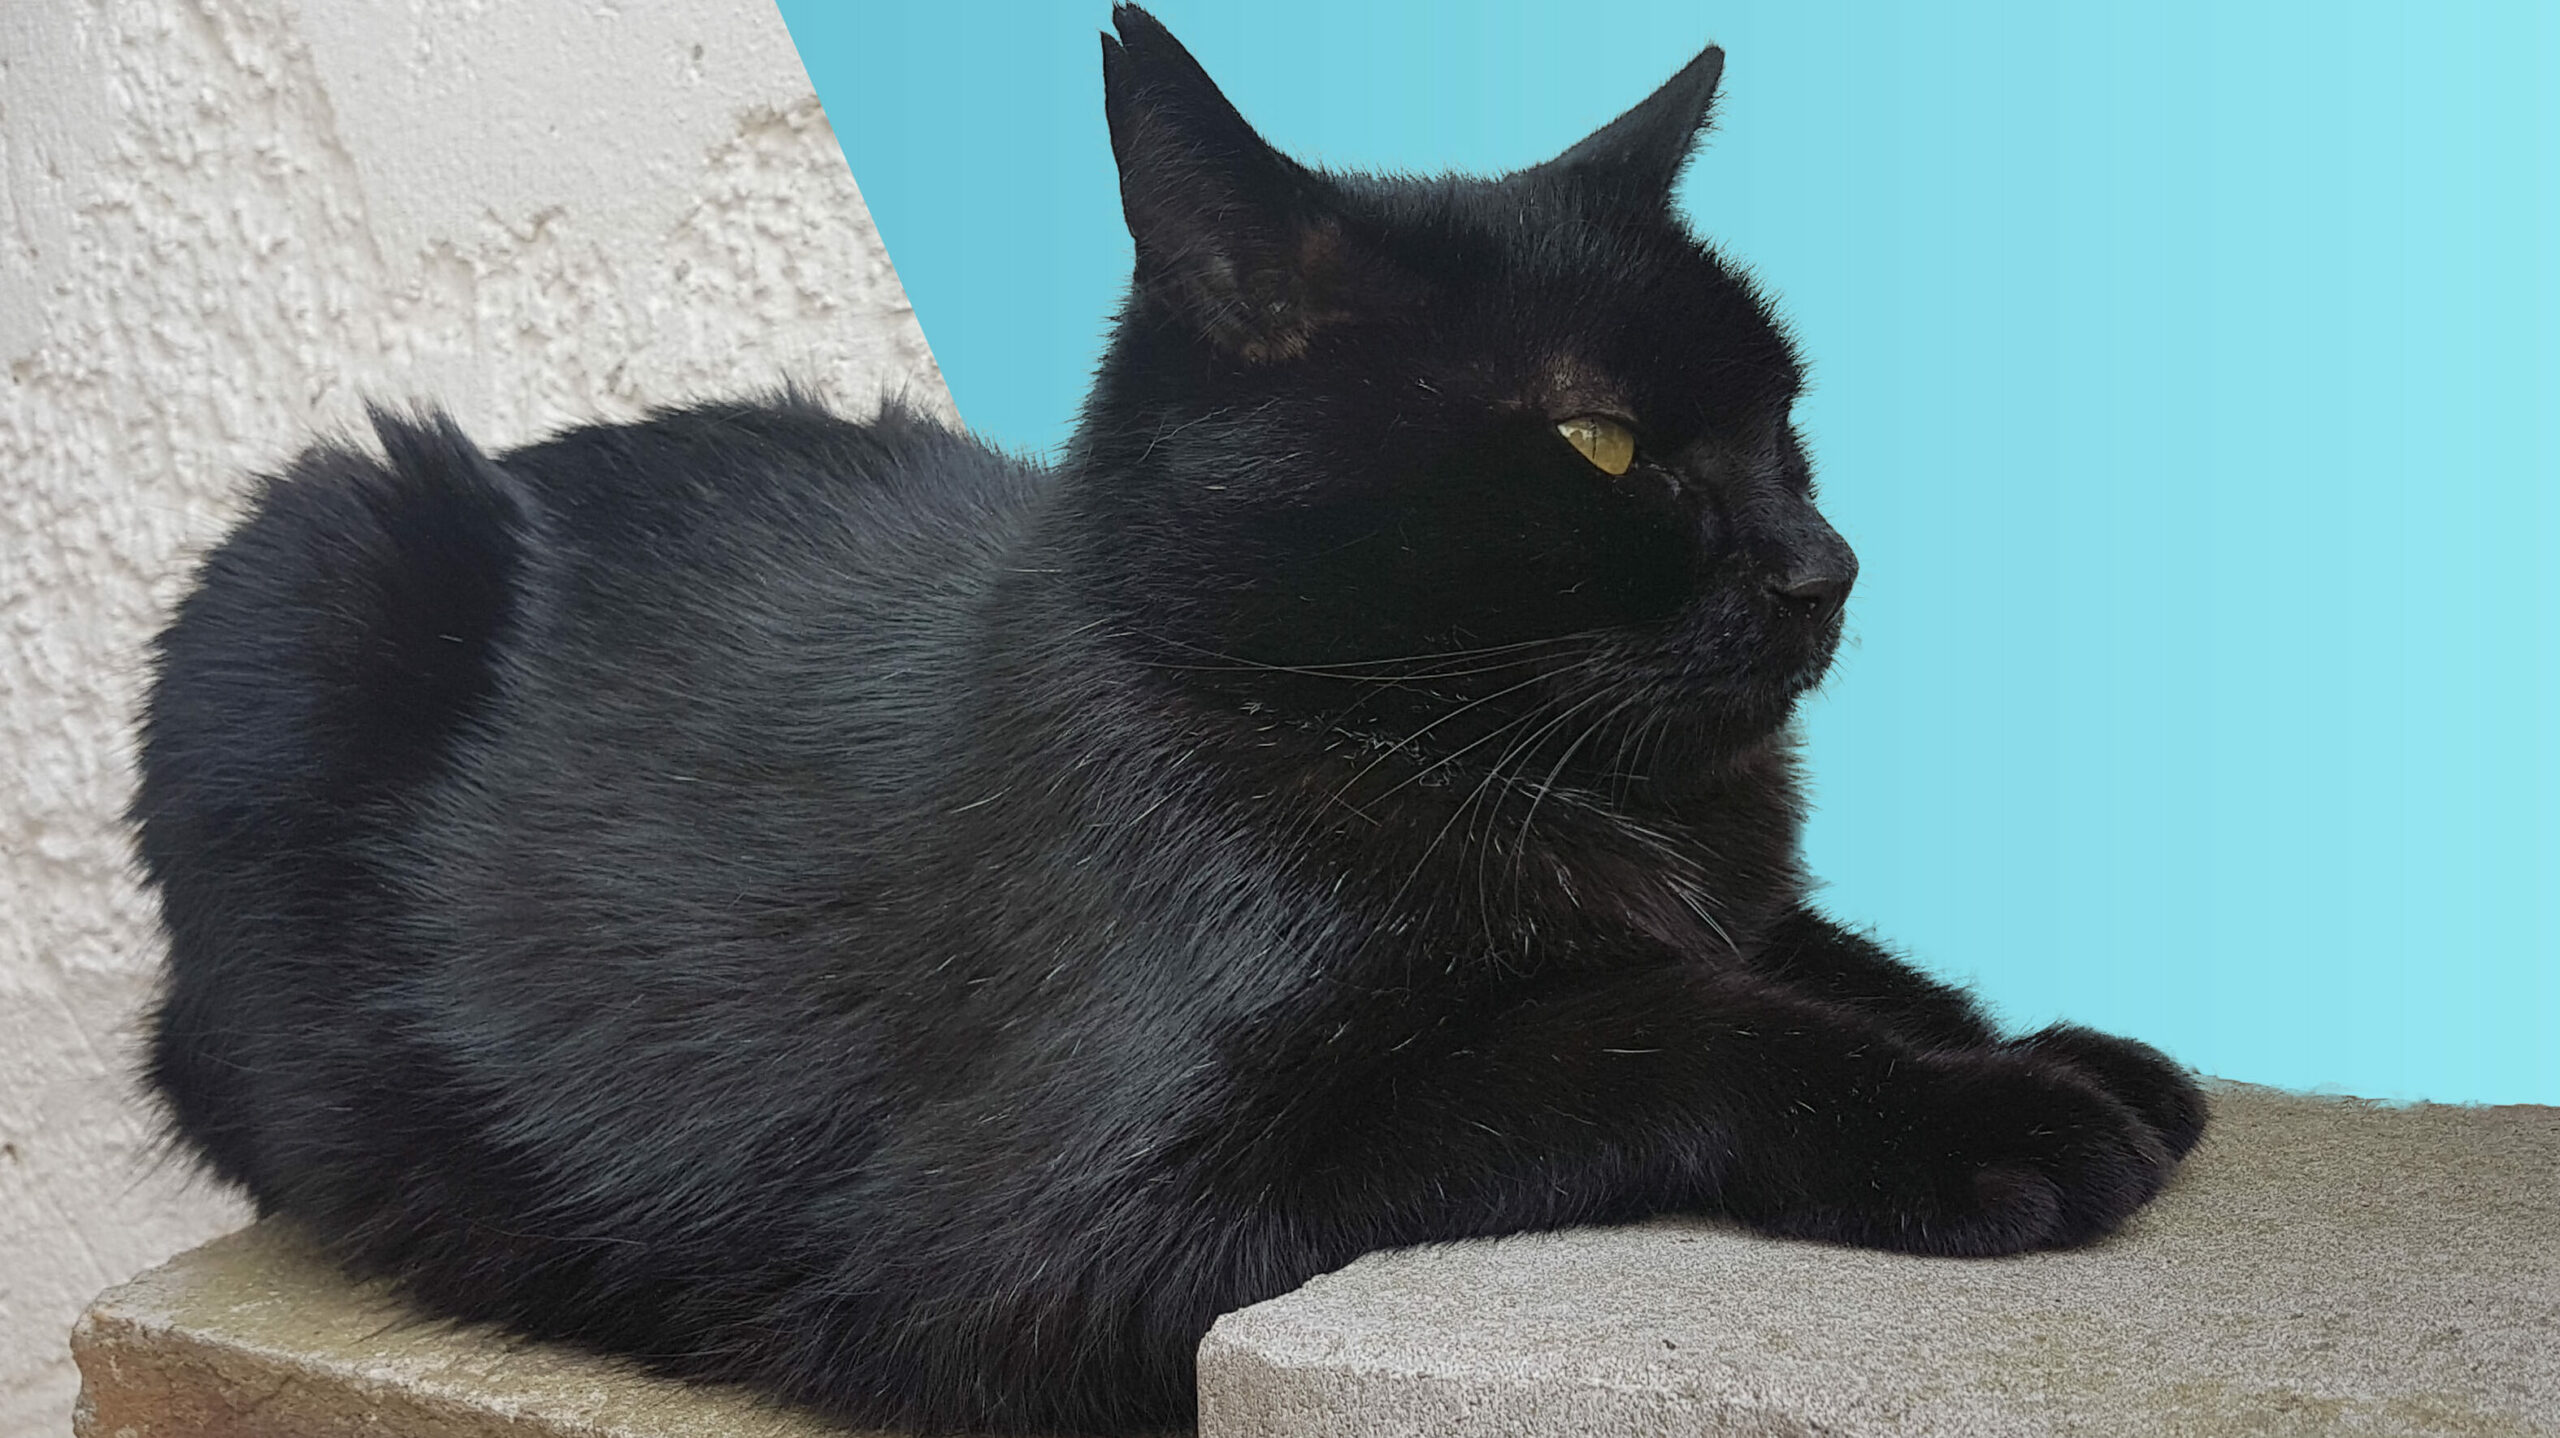 Schwarze Katze liegt auf zwei Ziegelsteinen. Der Hintergrund ist hinter der Katze in eine weiße und blaue Fläche geteilt.